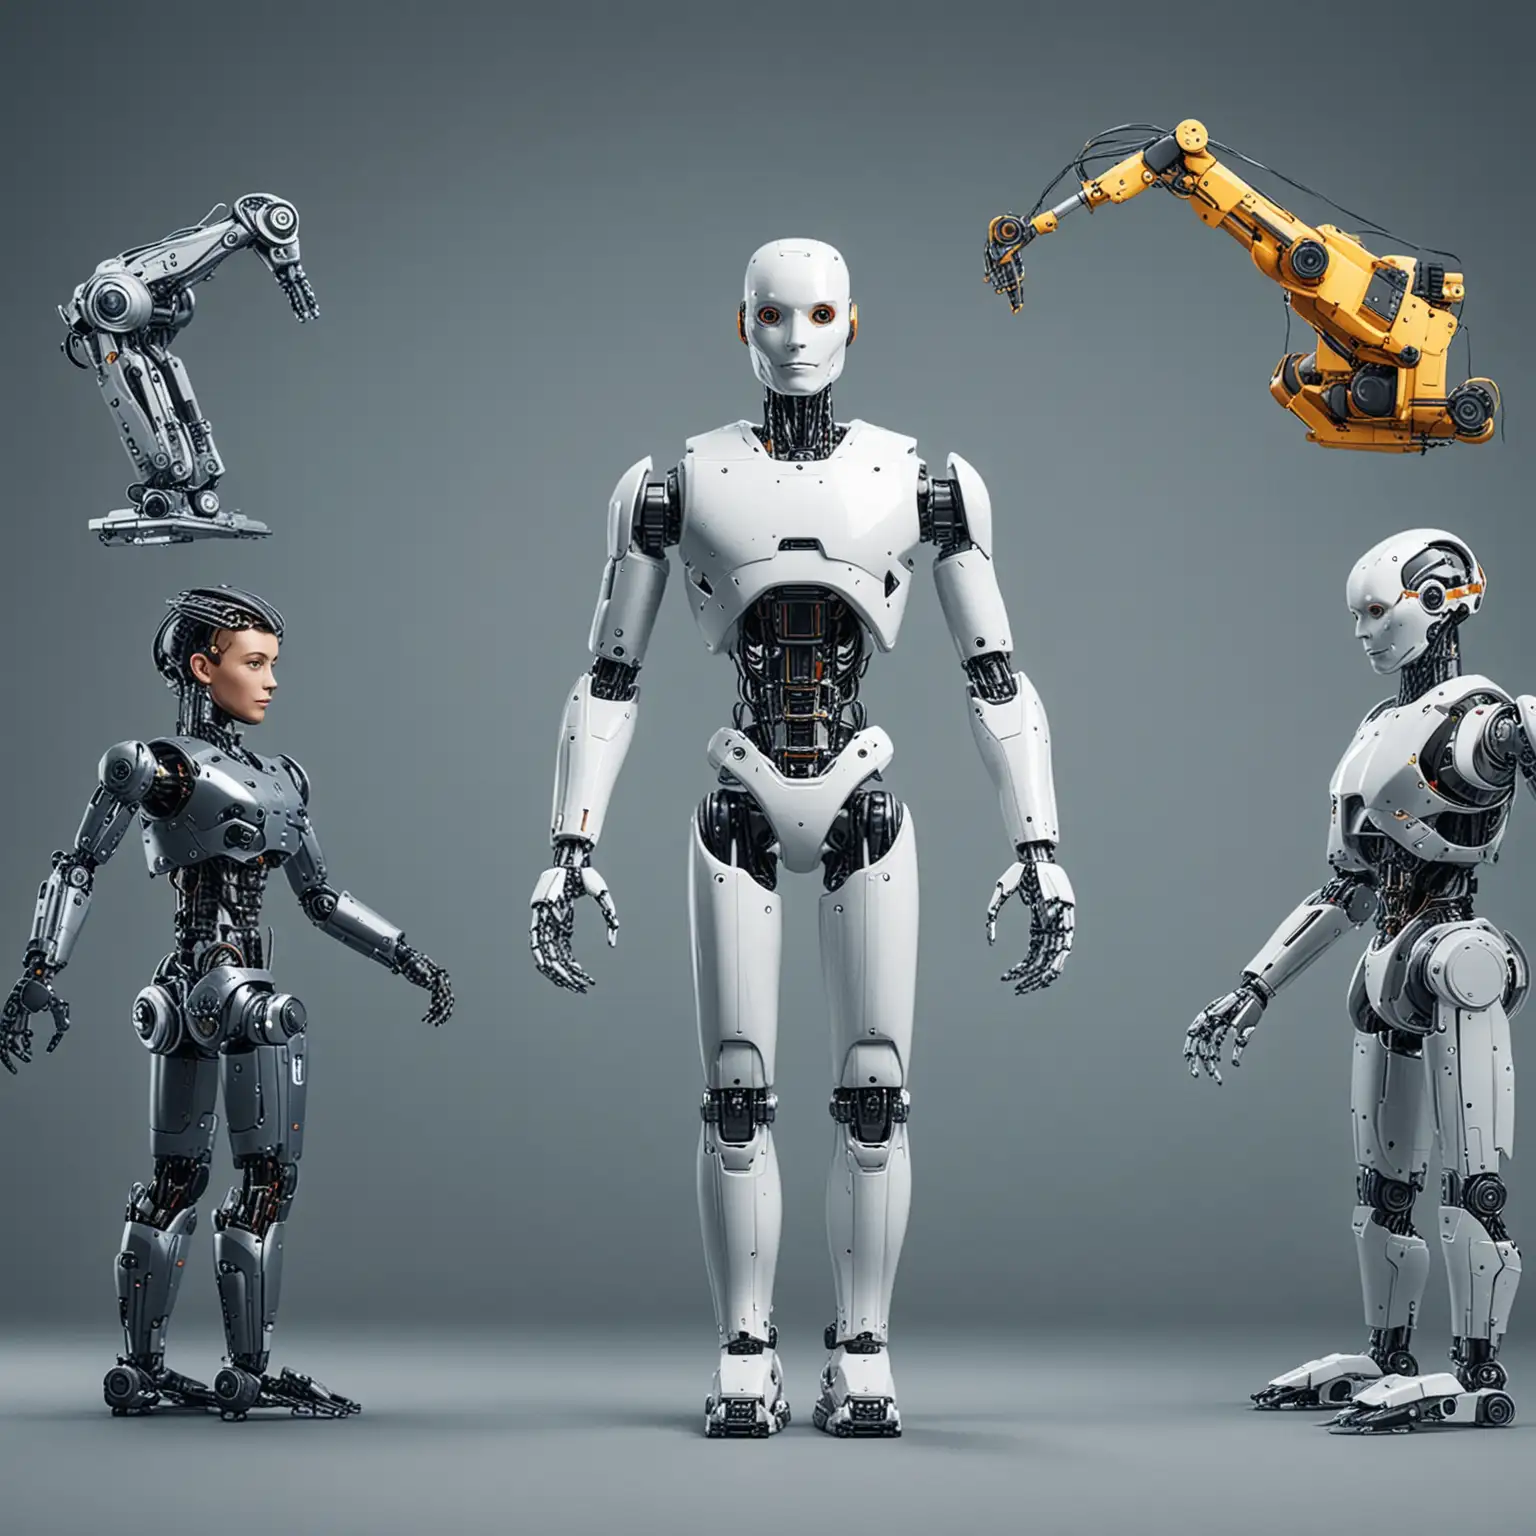 Foto que rpresente las diferentes industrias con robots ai